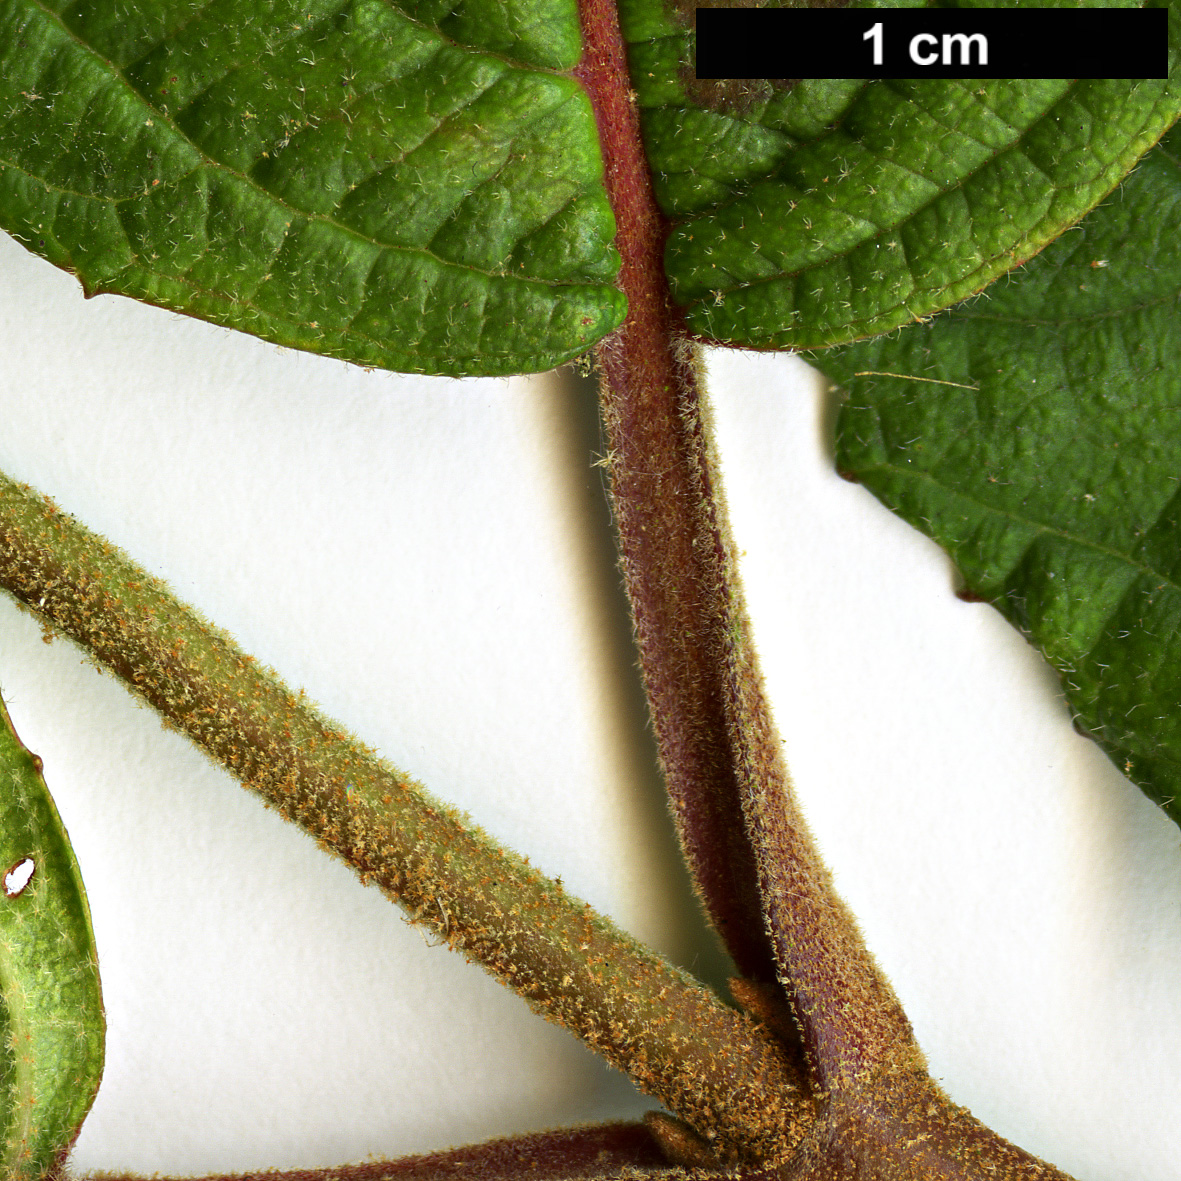 High resolution image: Family: Adoxaceae - Genus: Viburnum - Taxon: plicatum - SpeciesSub: f. tomentosum